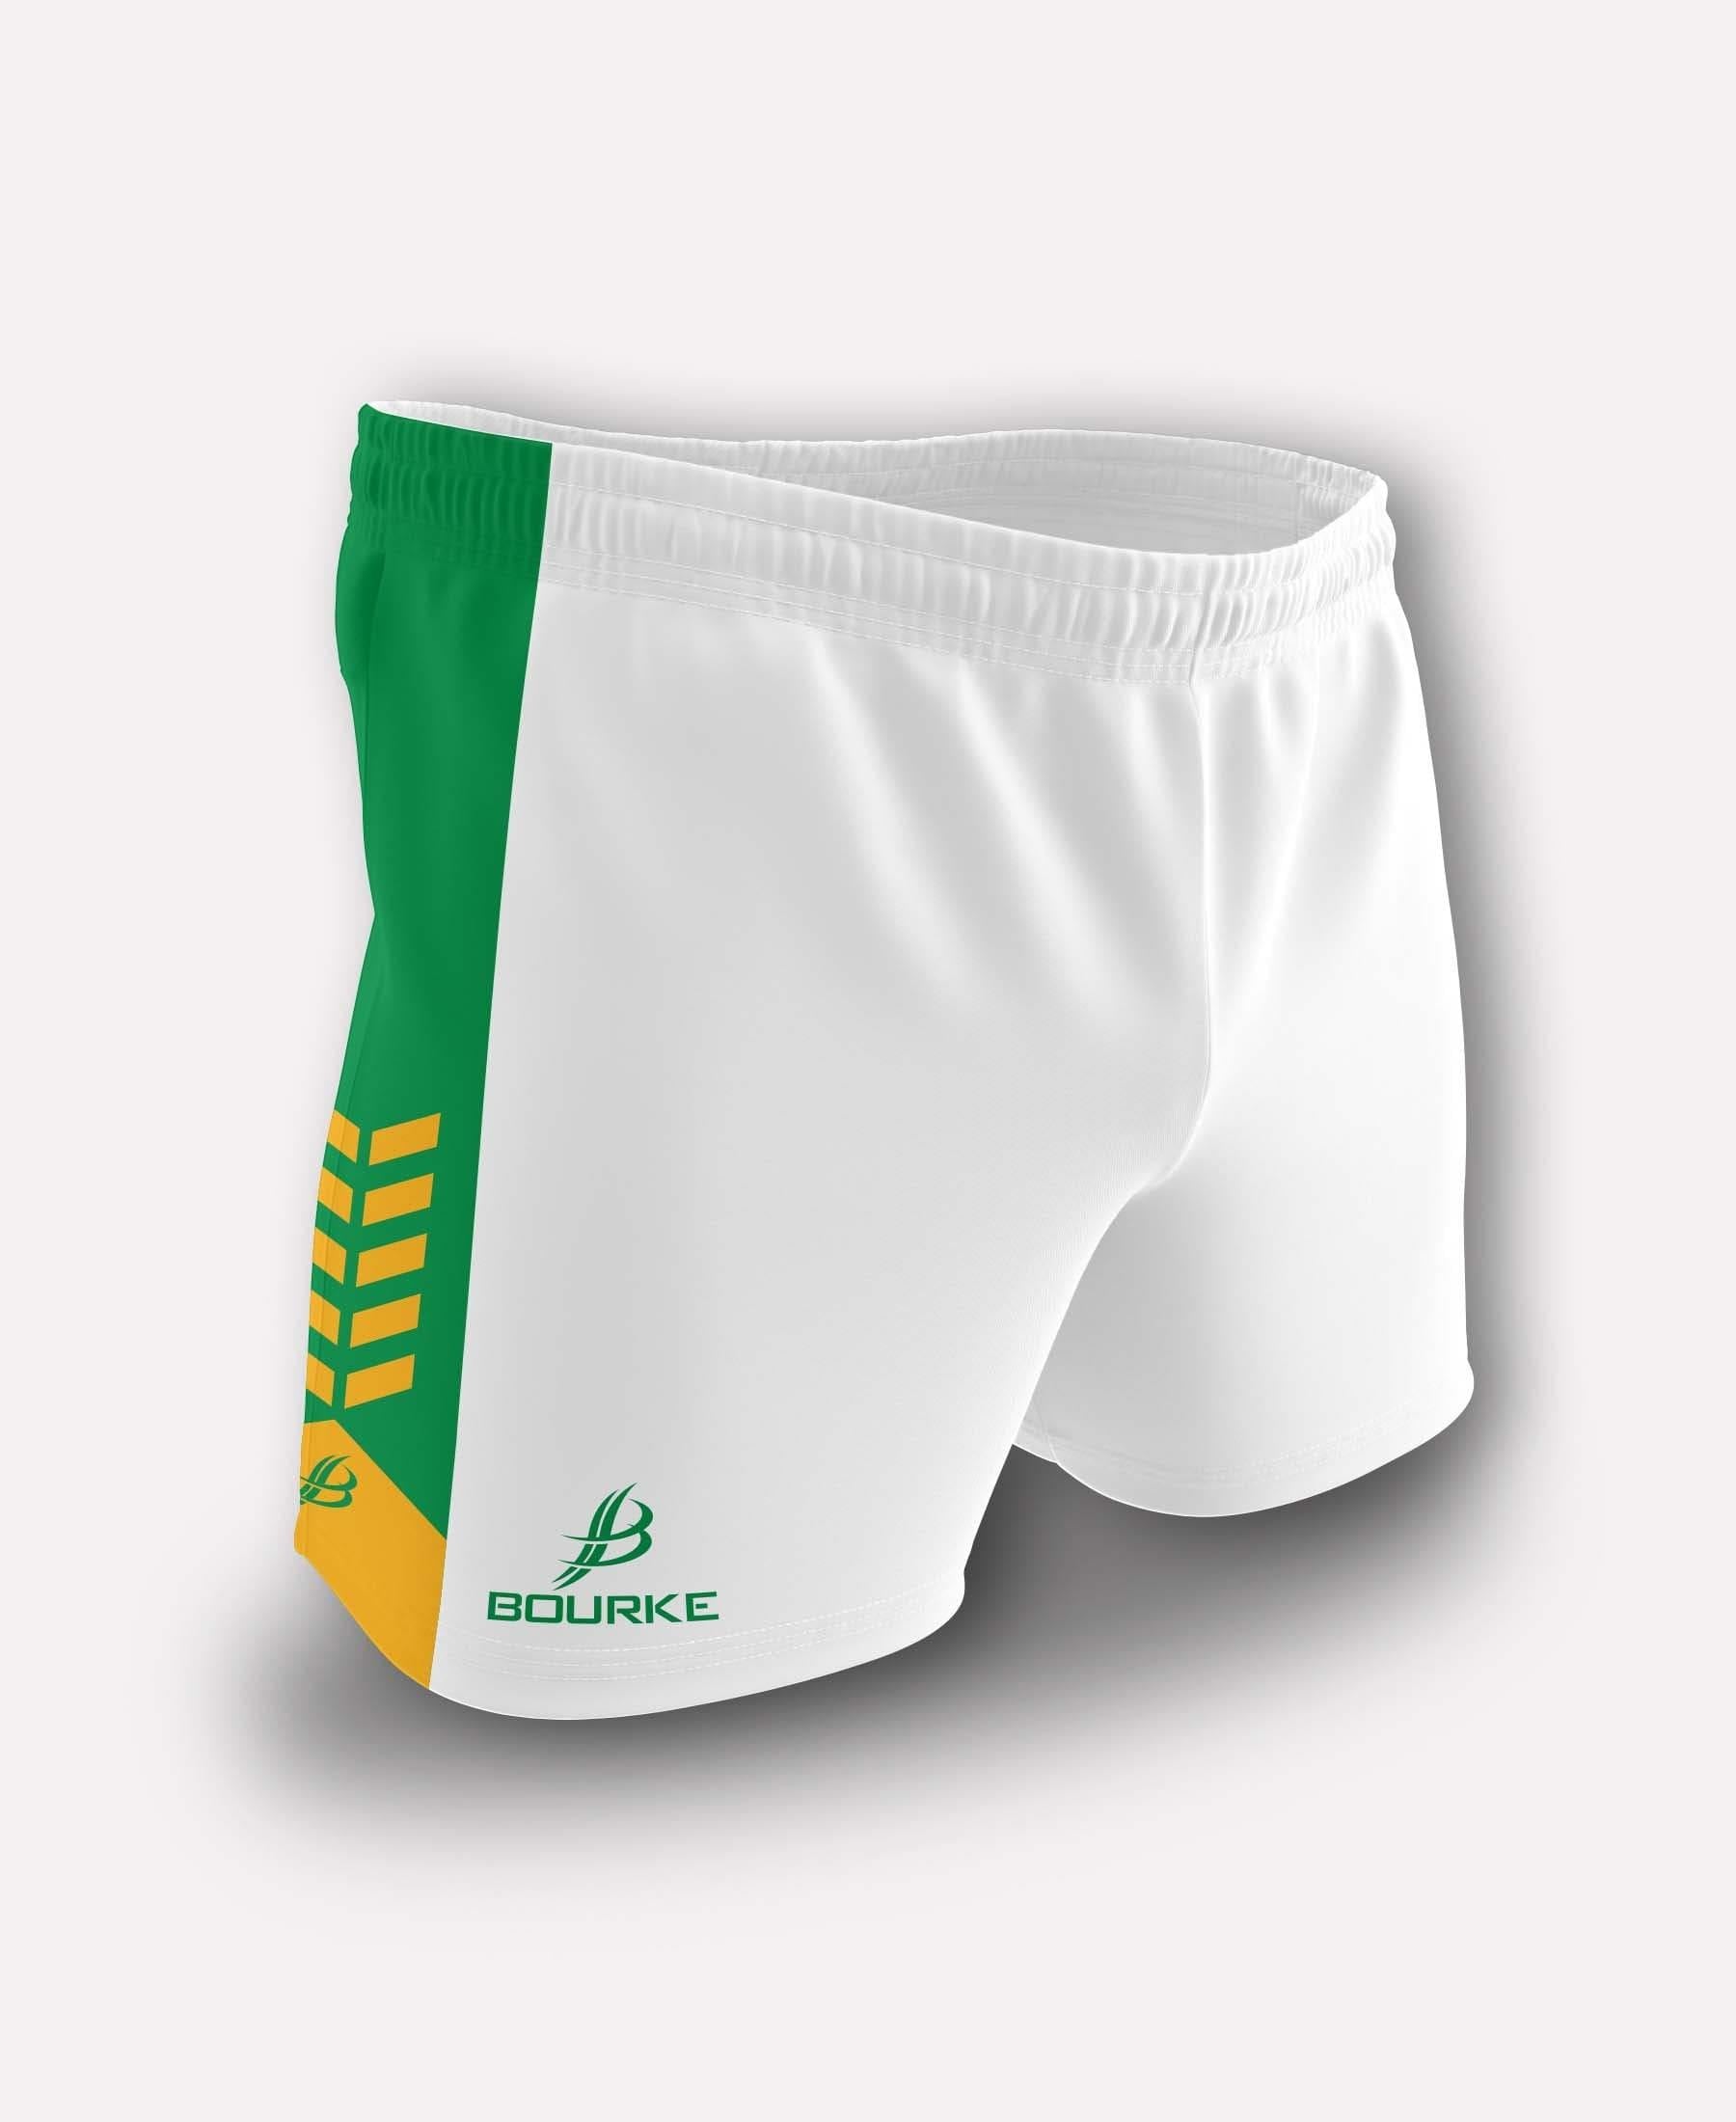 Chevron Kids Shorts (White/Green/Amber) - Bourke Sports Limited